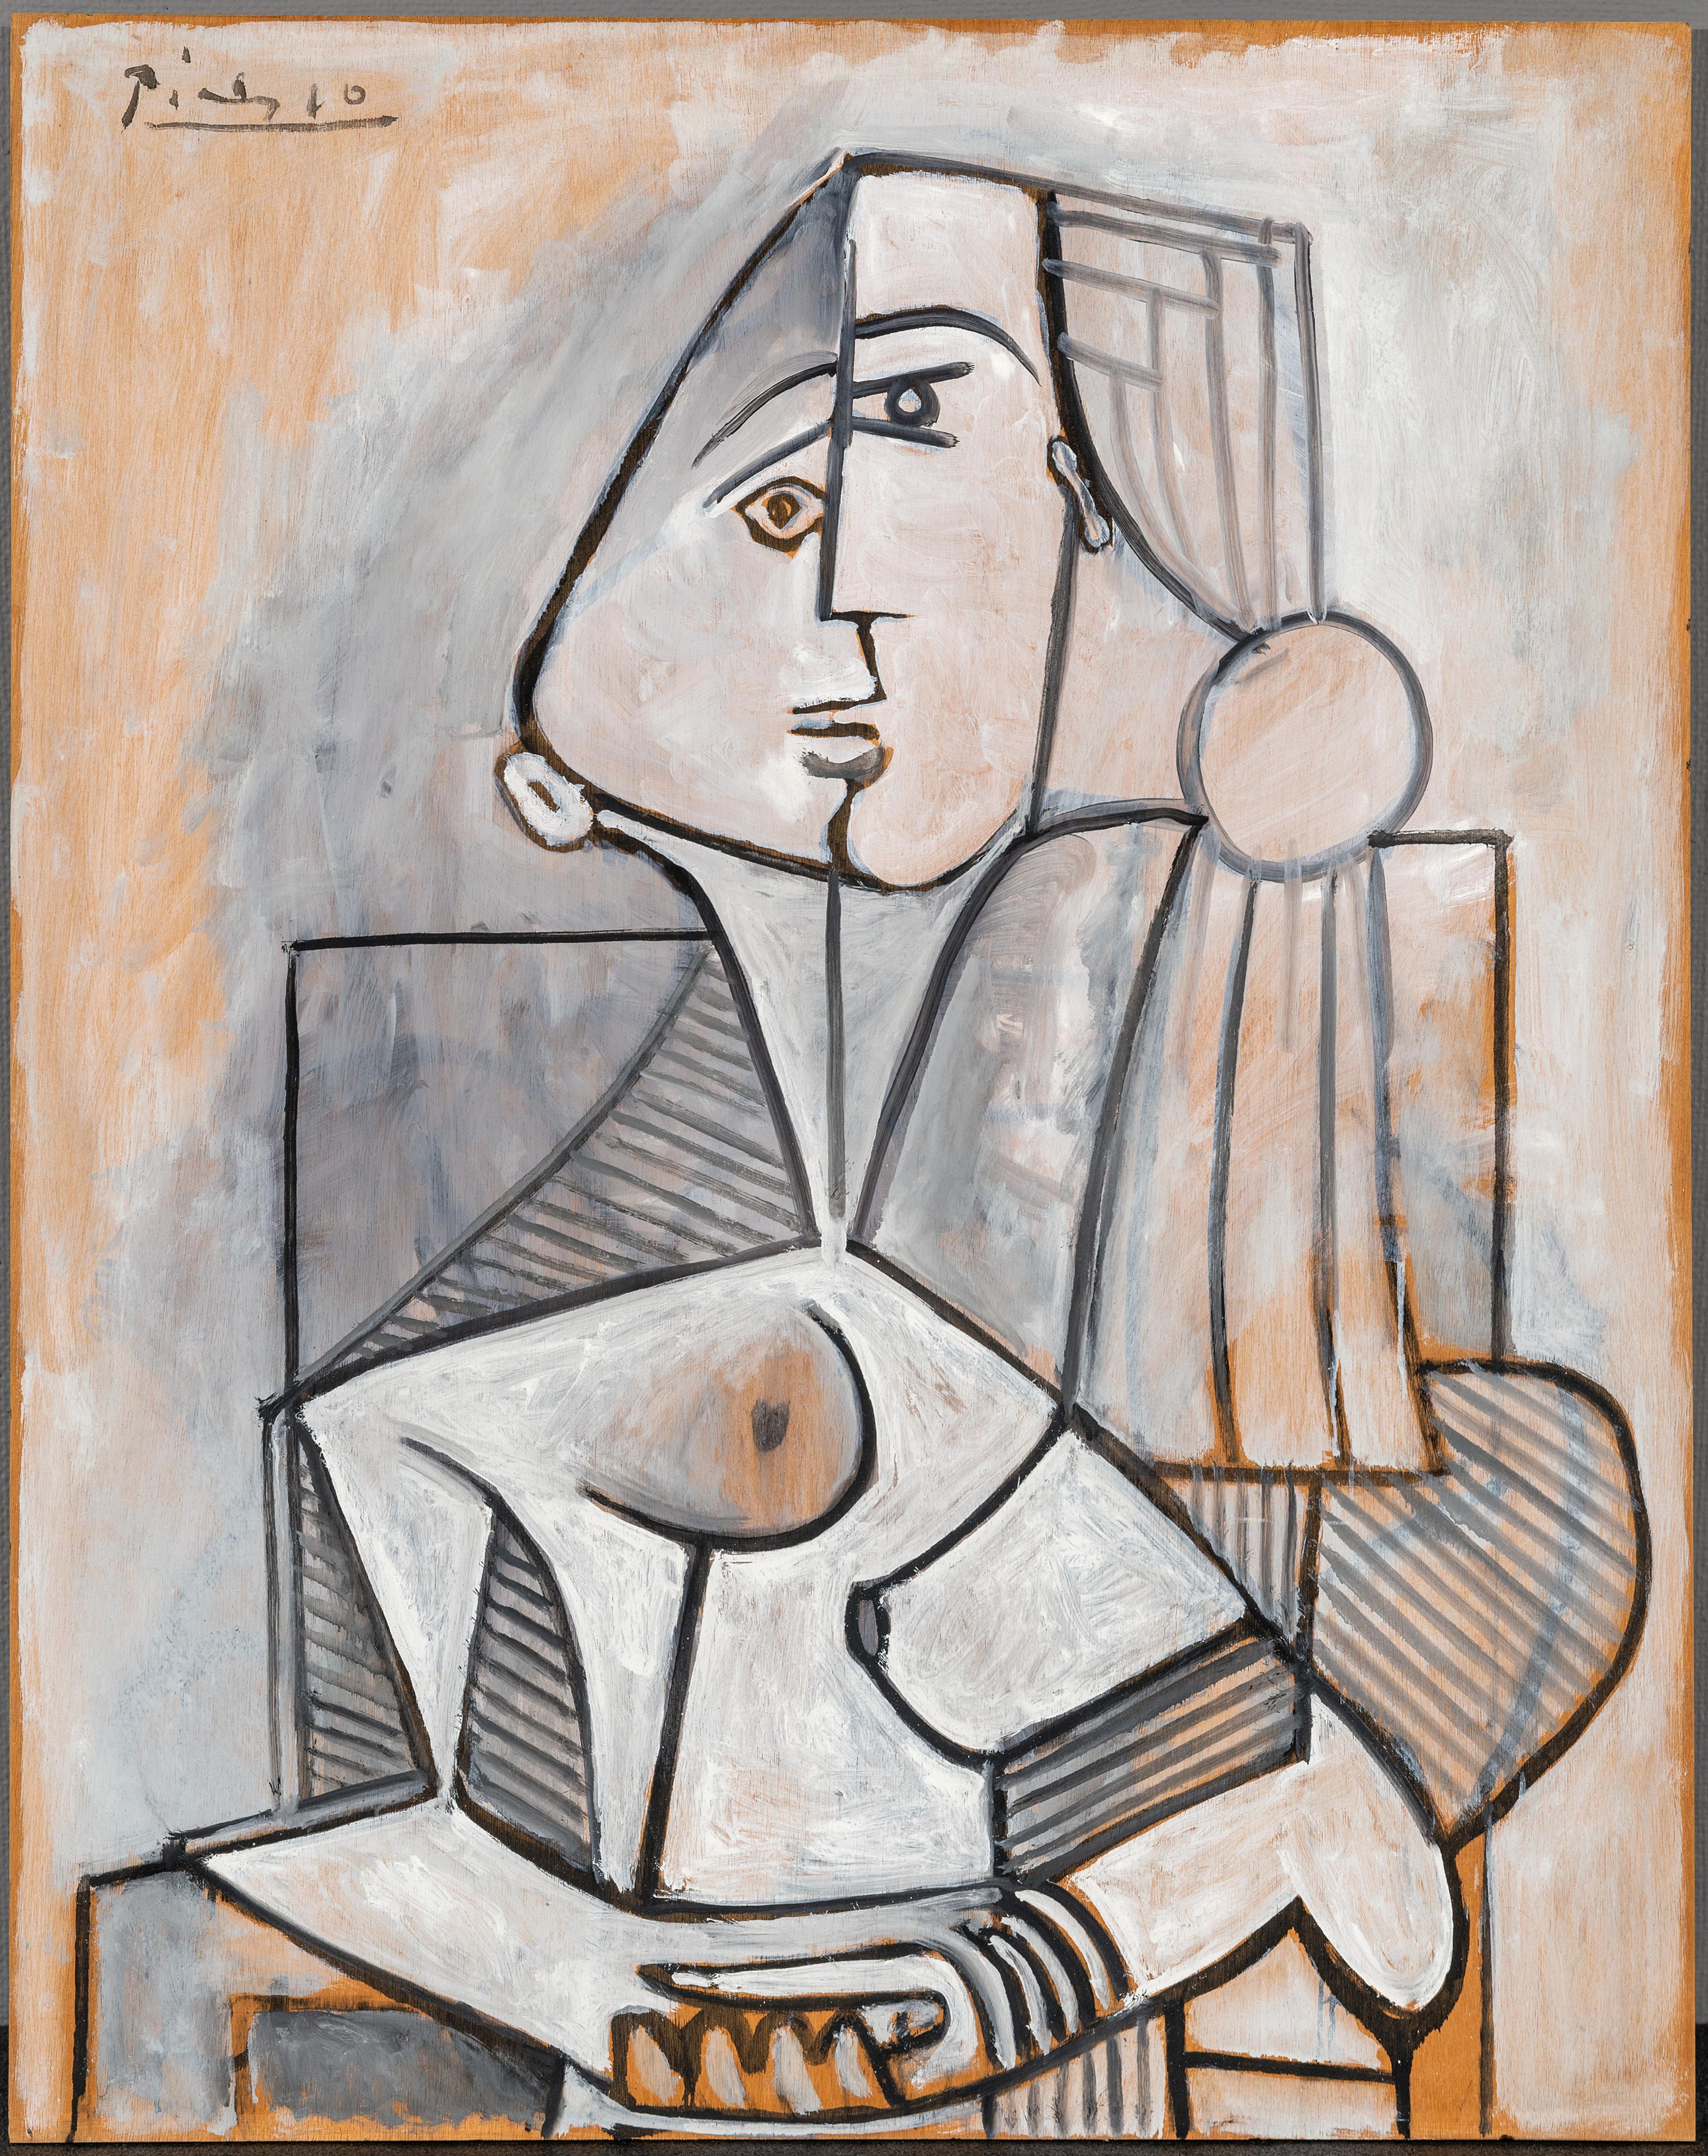 Maleri av Picasso som viser en rekke kantete former satt sammen til å ligne en naken kvinne.